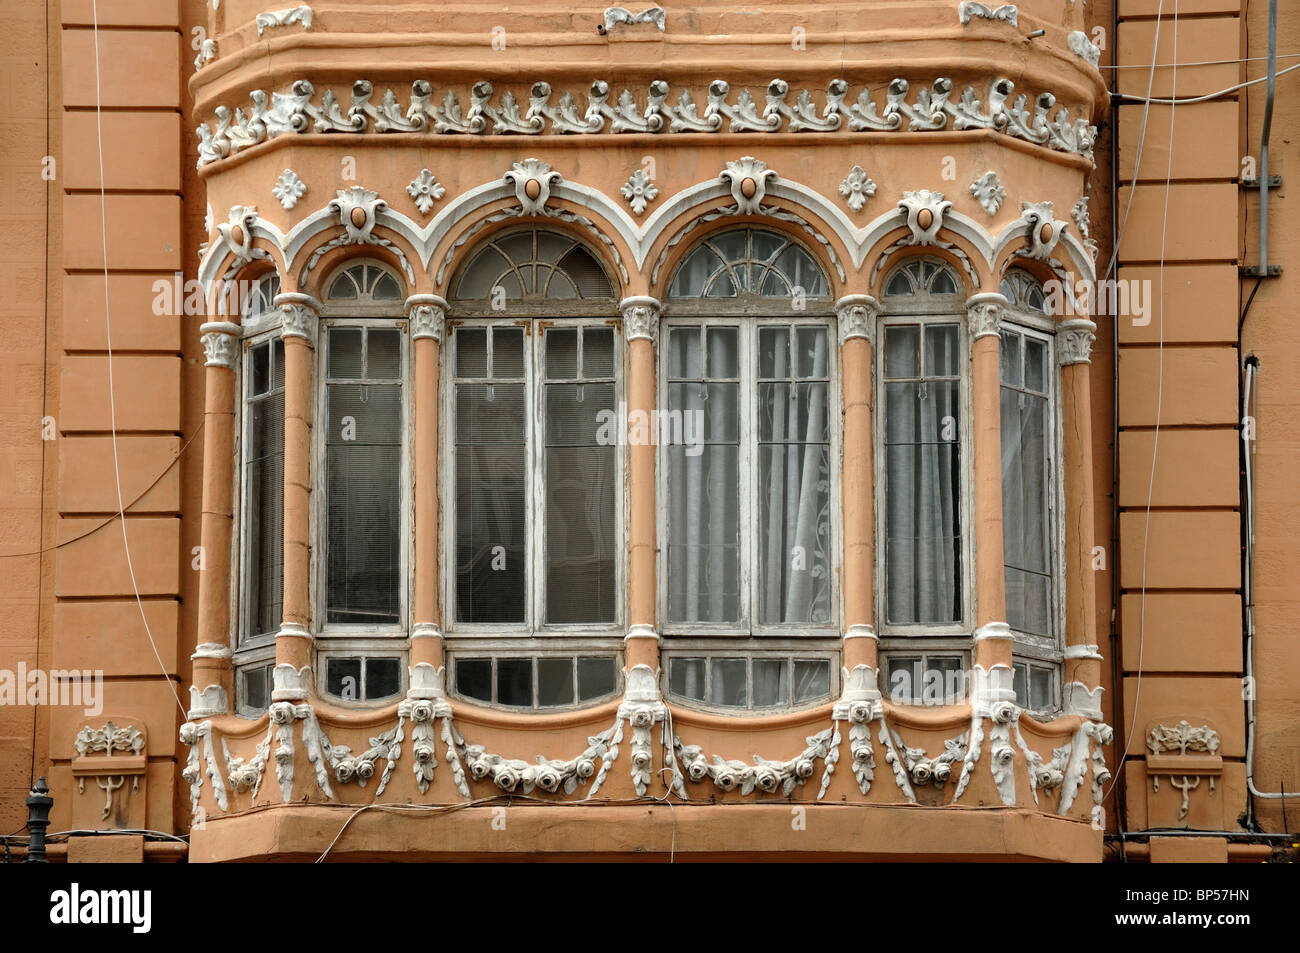 Baie vitrée de l'immeuble Art Nouveau Melul (1915), par Enrique Nieto, Melilla, Espagne Banque D'Images